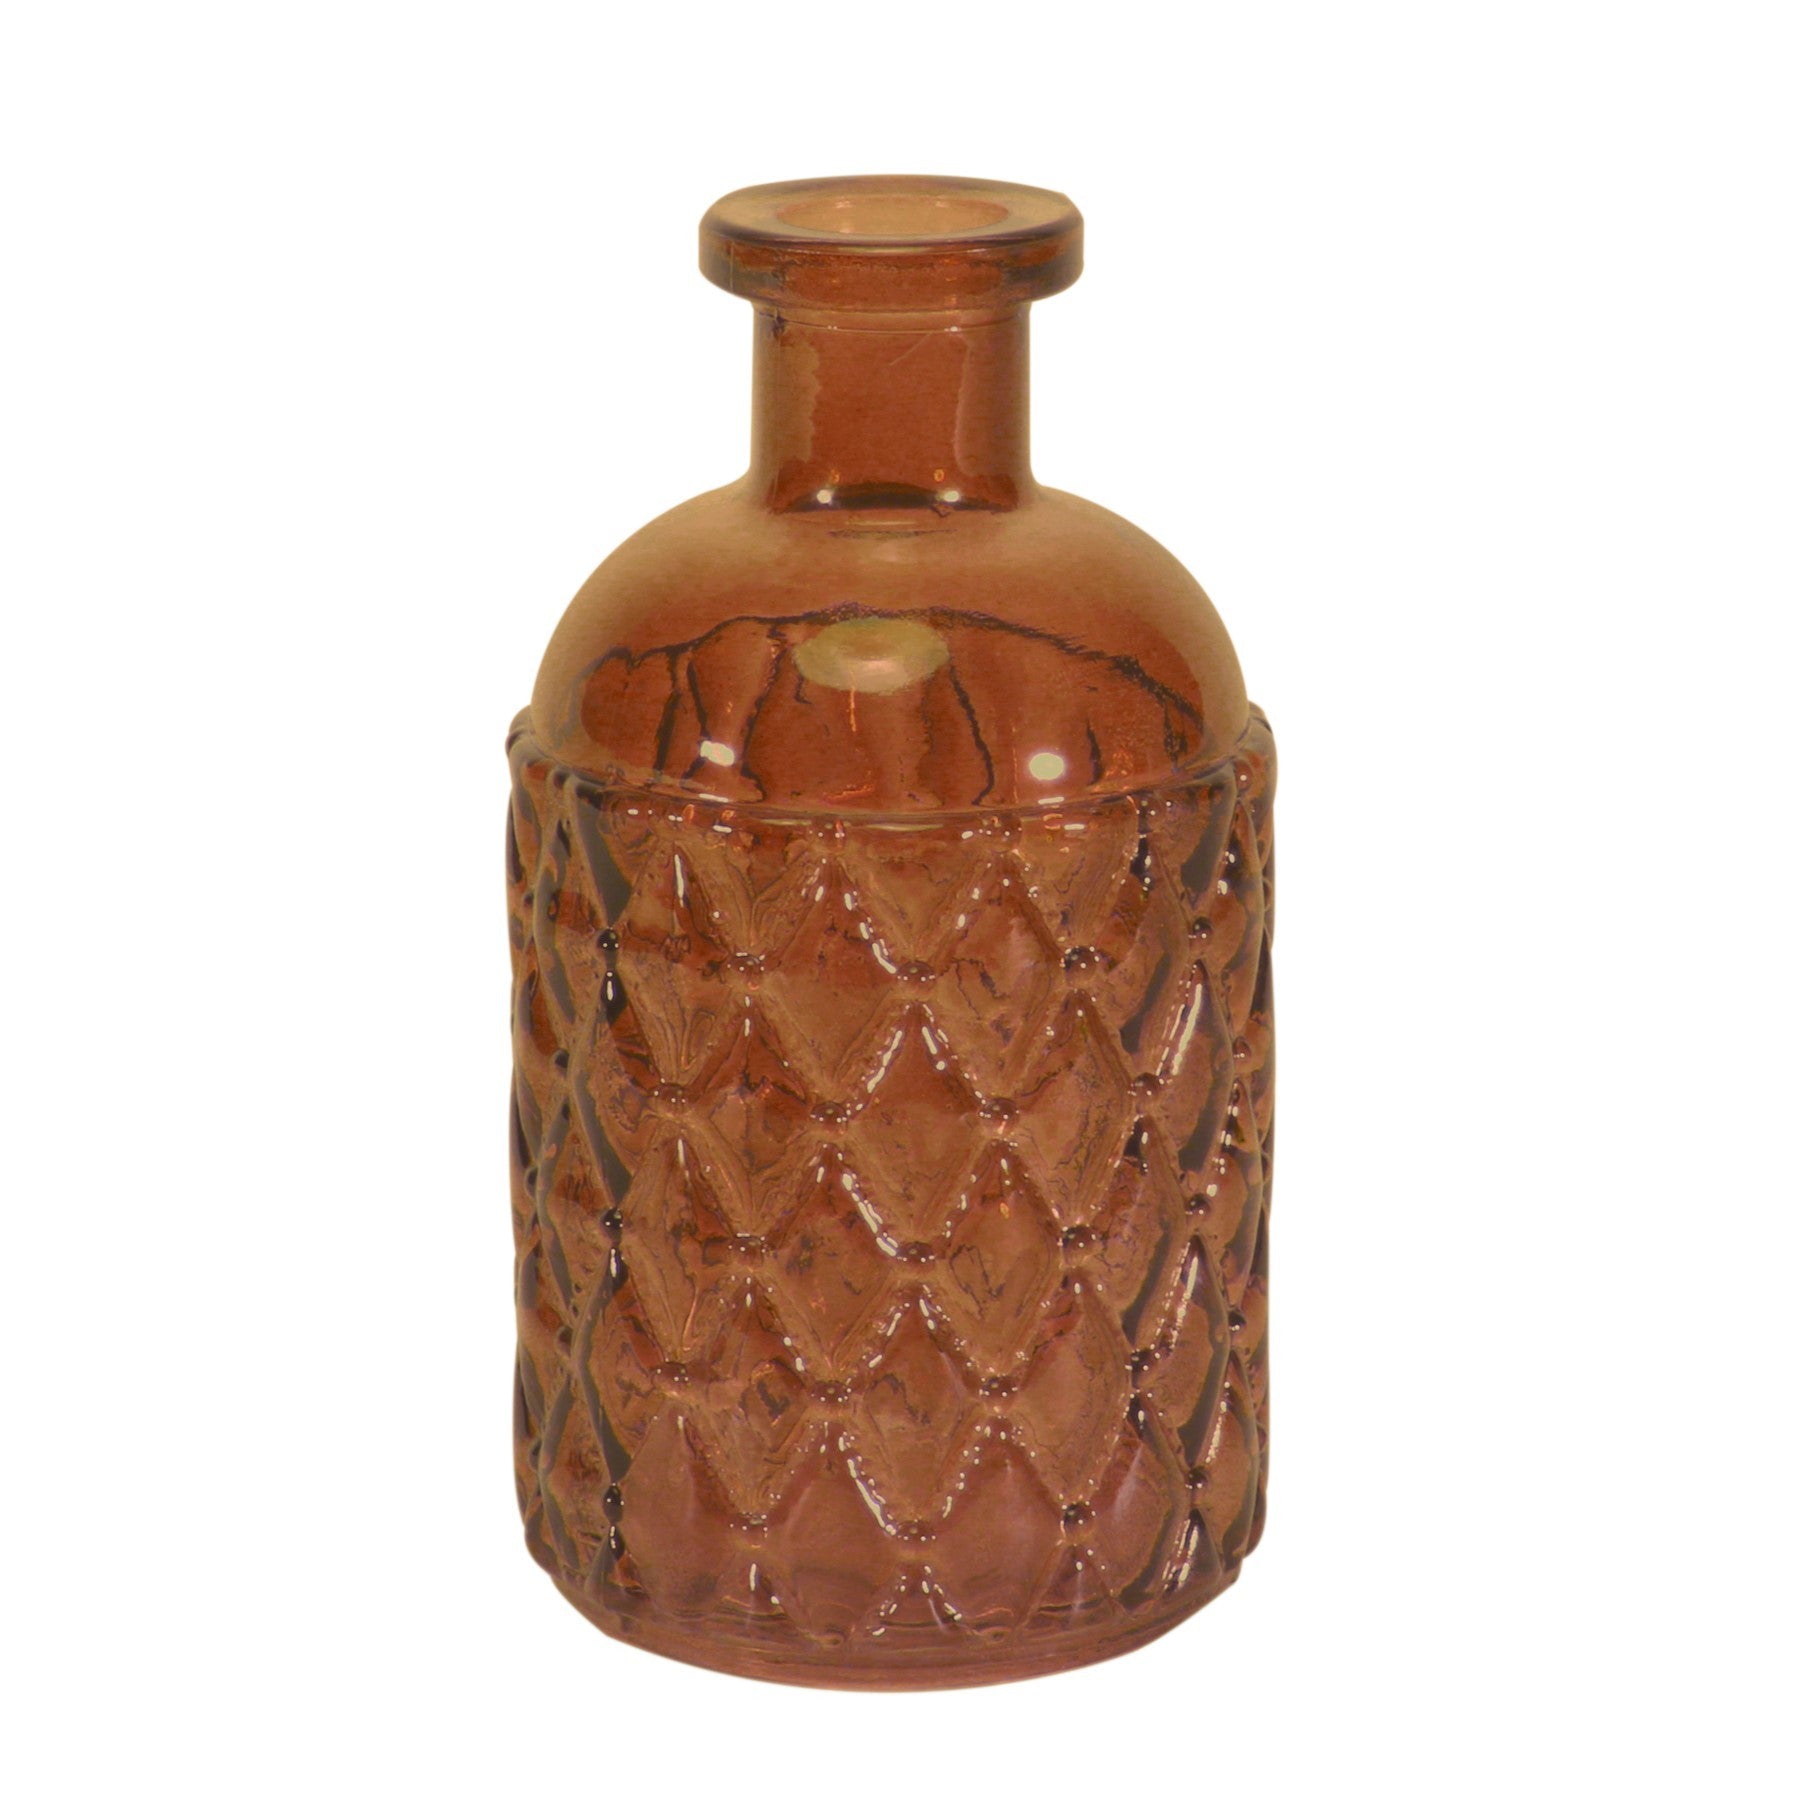 View Romagna Honey Bottle 13cm information